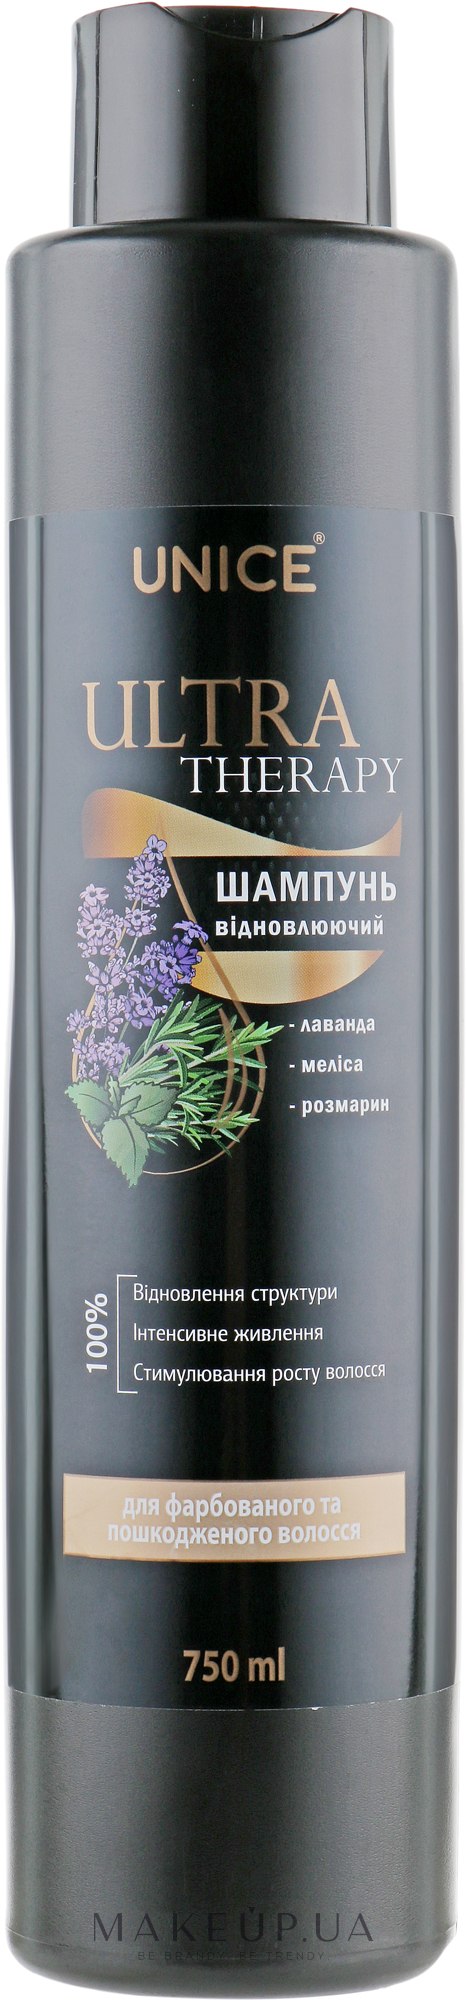 Відновлювальний шампунь для волосся - Ecofusion Ultra Therapy Shampoo — фото 750ml